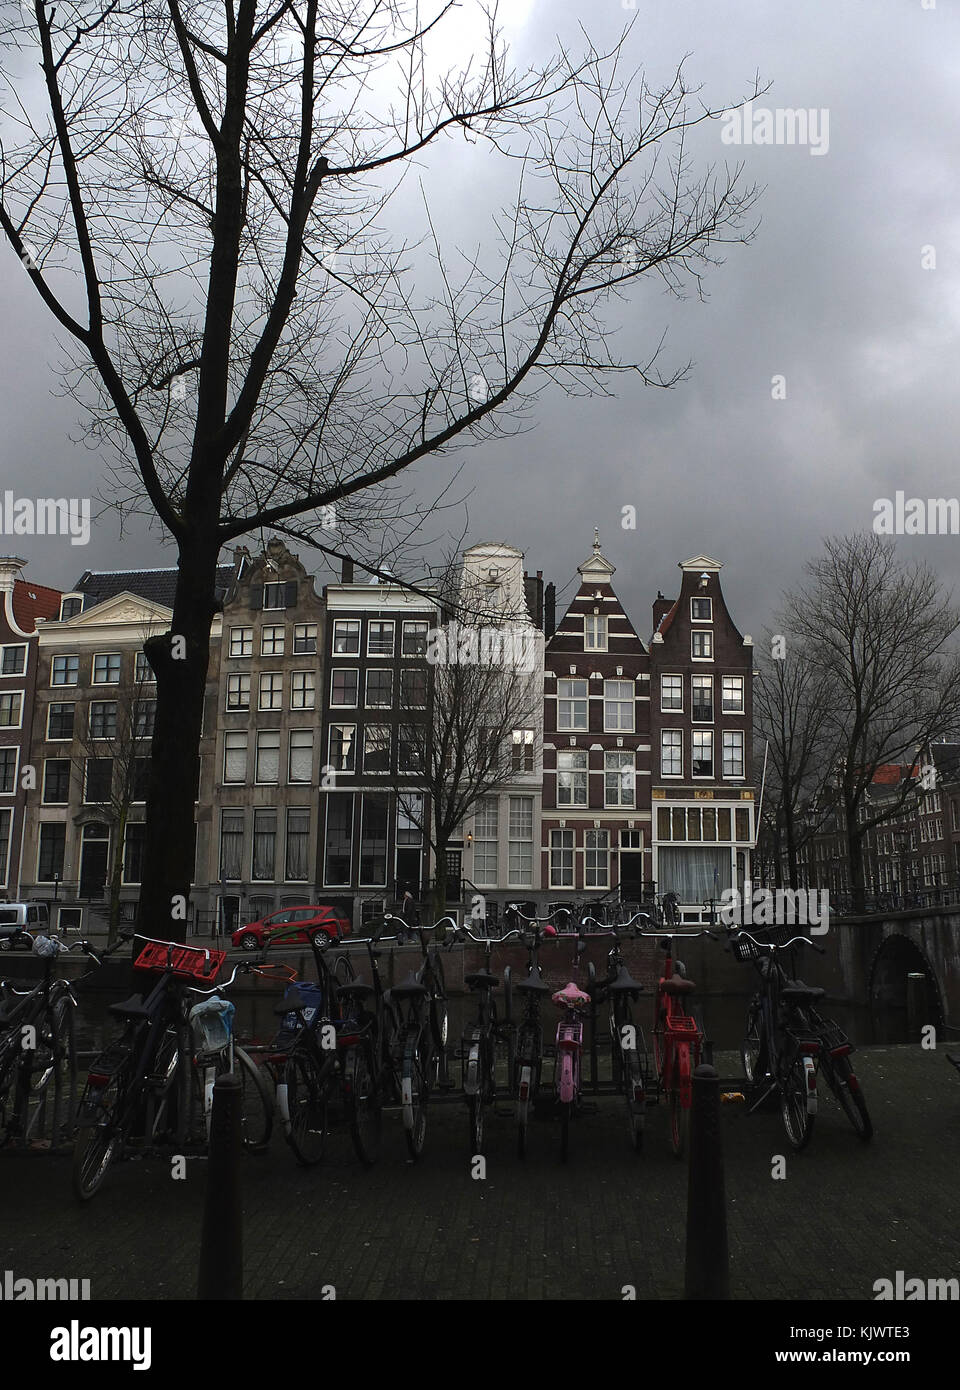 Amsterdam, capitale des Pays-Bas, la ville de Rembrandt, le Rijksmuseum, le musée Vincent van Gogh, port, vacances d'hiver, 17e siècle, maisons élégantes, Banque D'Images